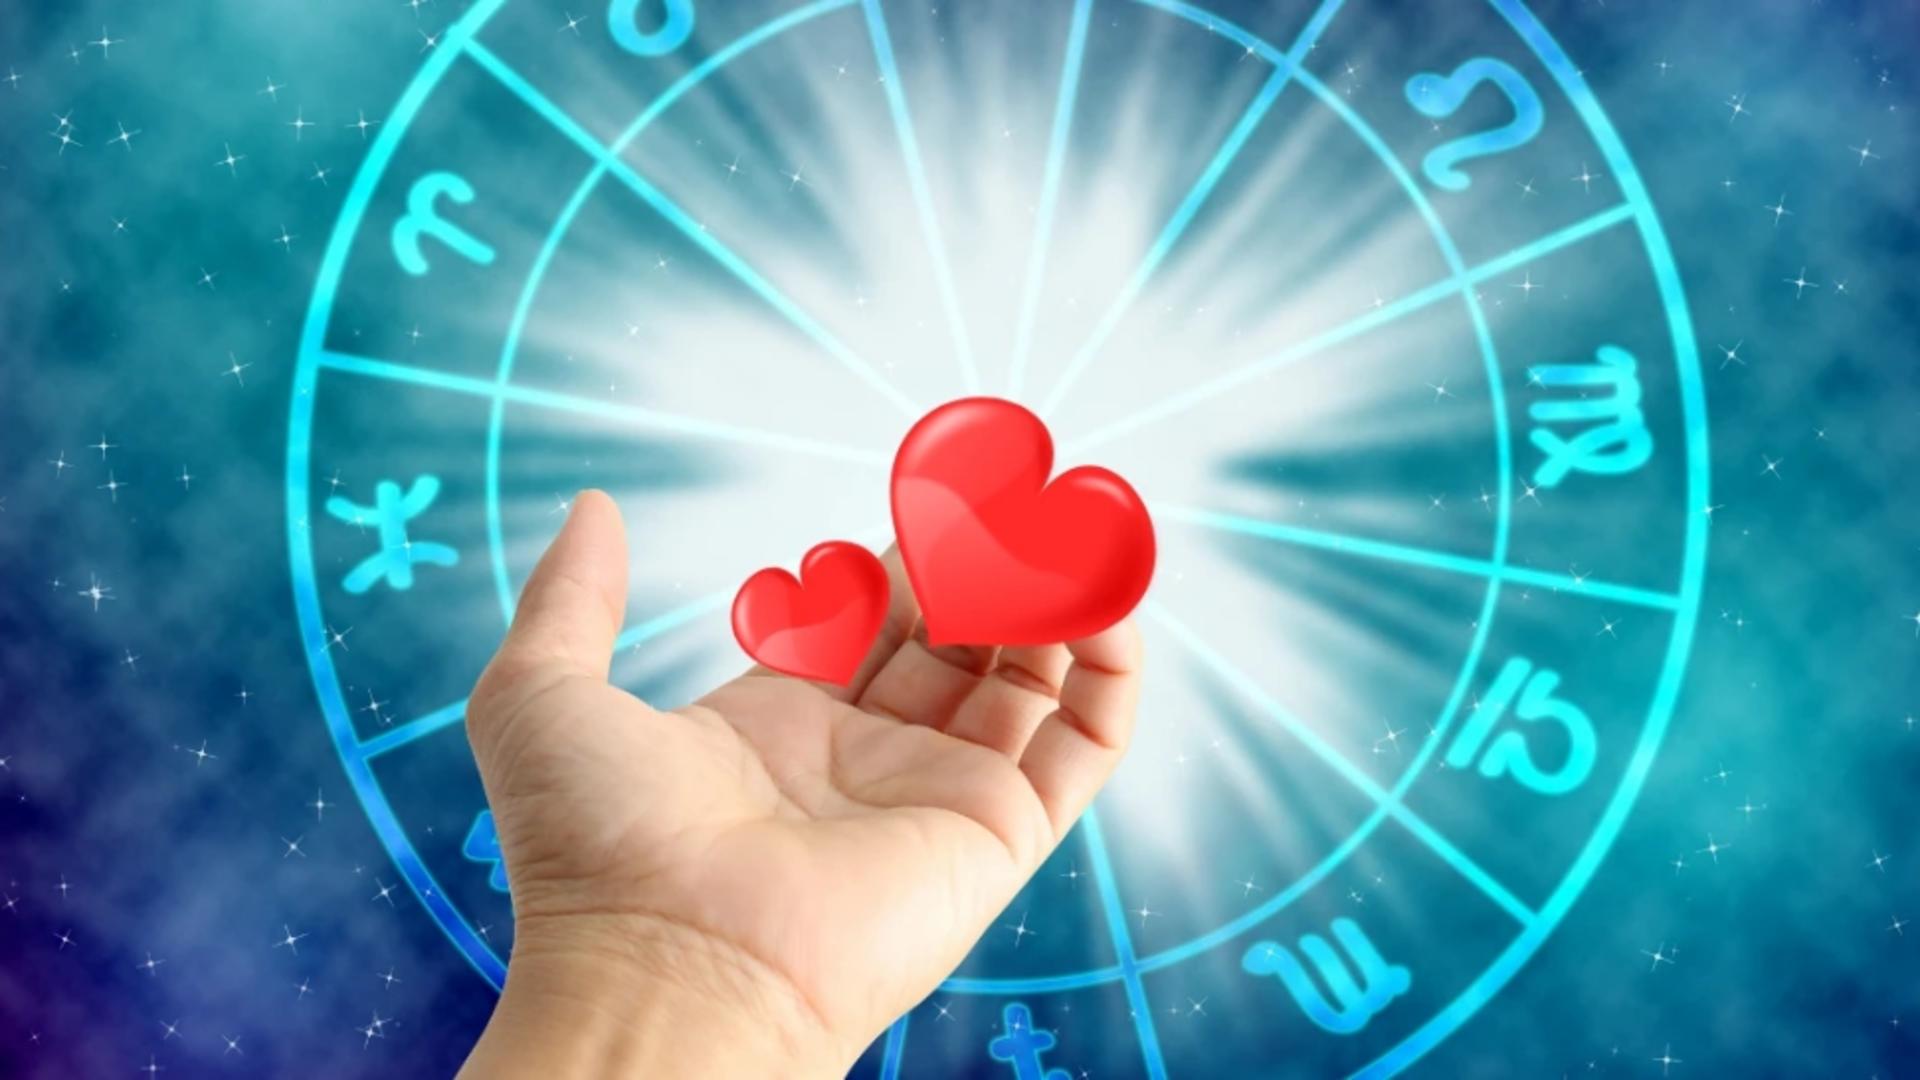 Horoscopul dragostei, săptămâna 16 – 22 octombrie. Astrele sunt decise să despartă cuplurile instabile și să lege povești de dragoste adevărate